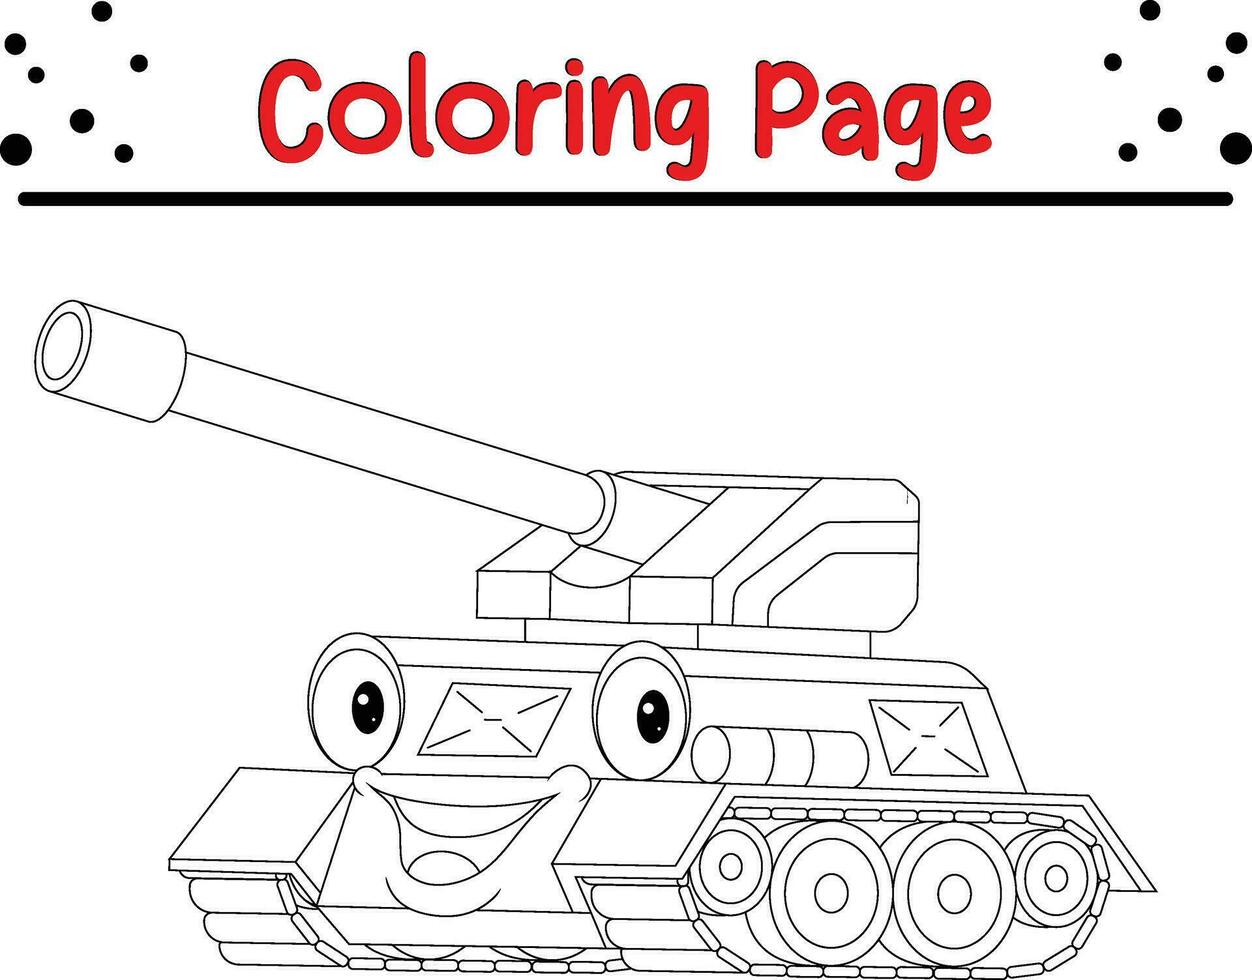 divertente militare serbatoio colorazione pagina per bambini vettore